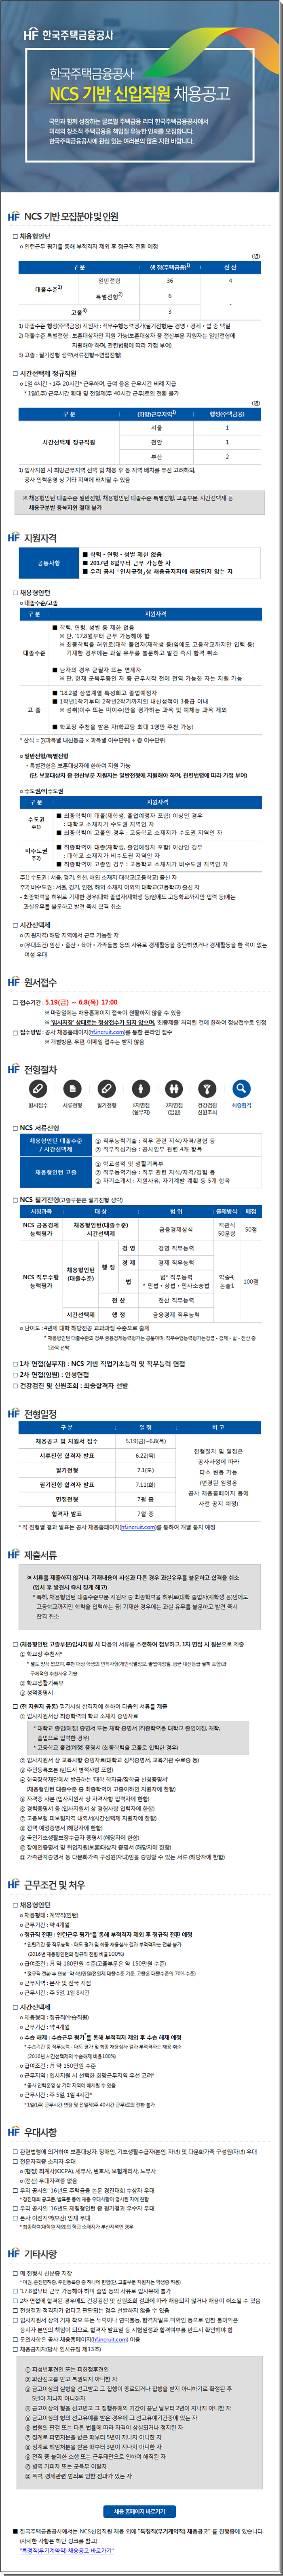 한국주택금융공사 NCS 기반 신입직원 채용공고